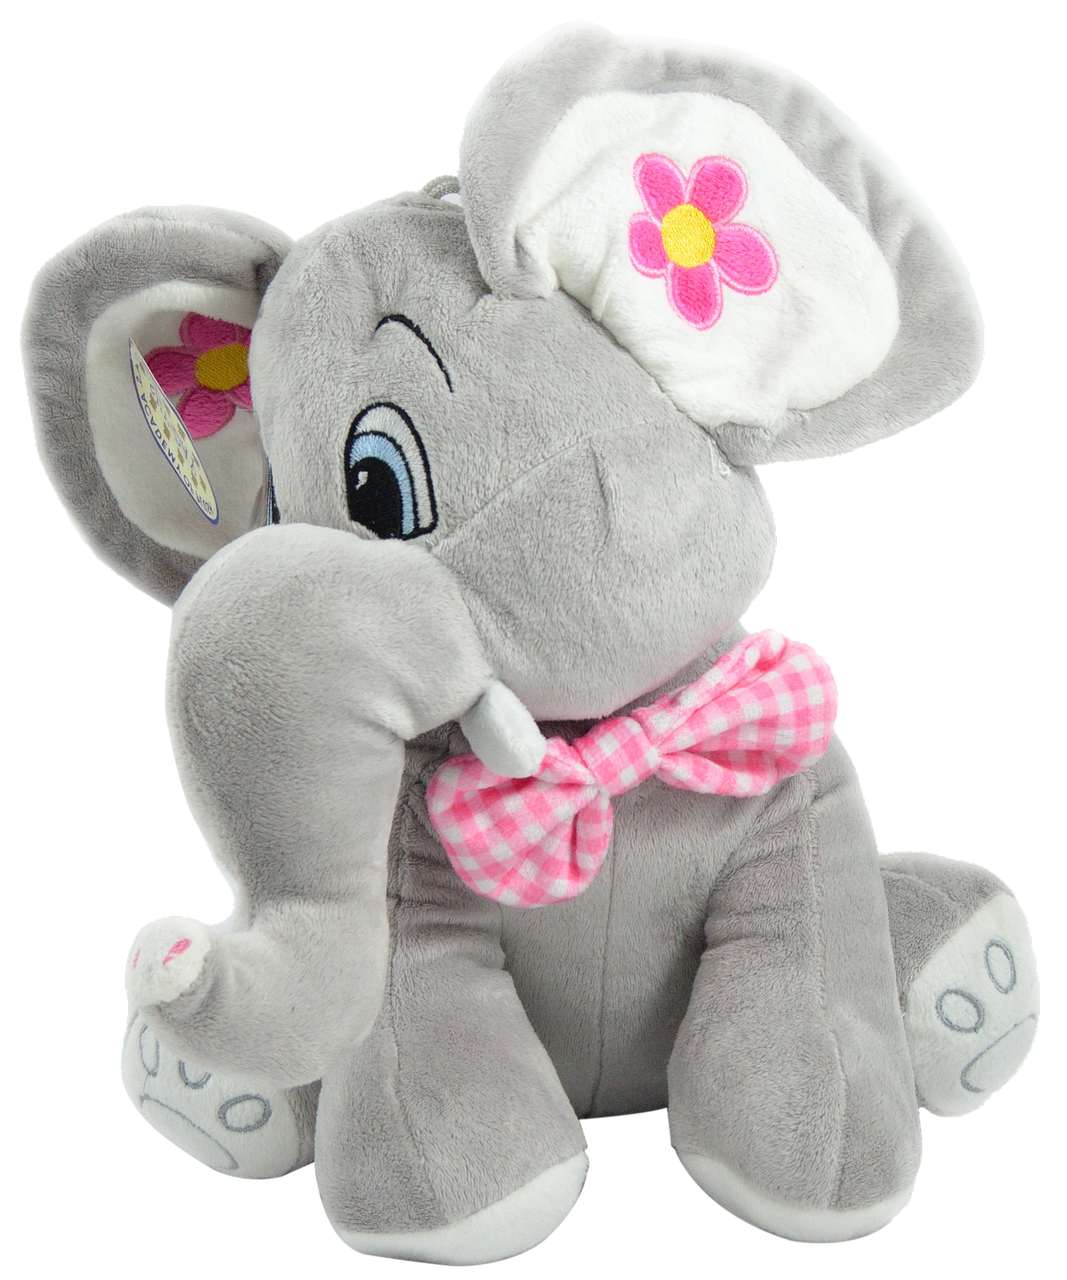 elephant toys baby free photo